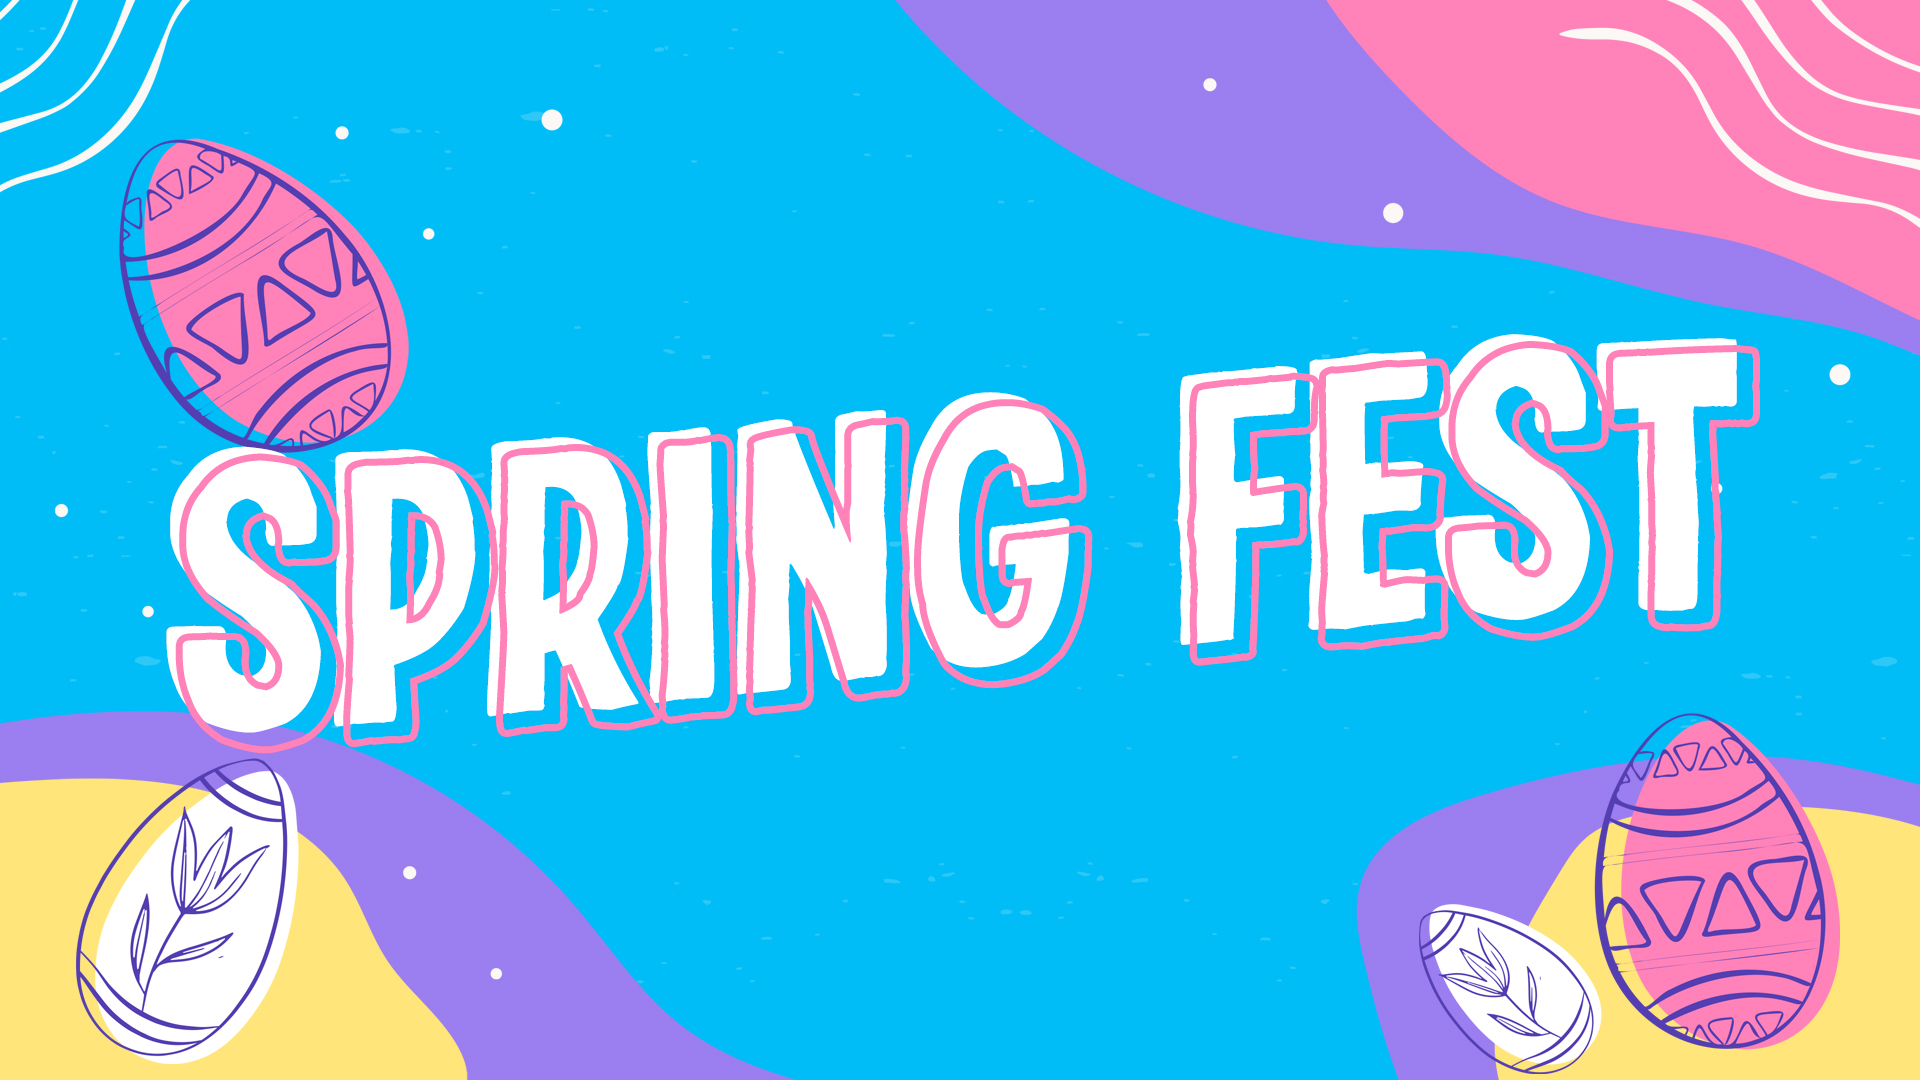 springfest_full image